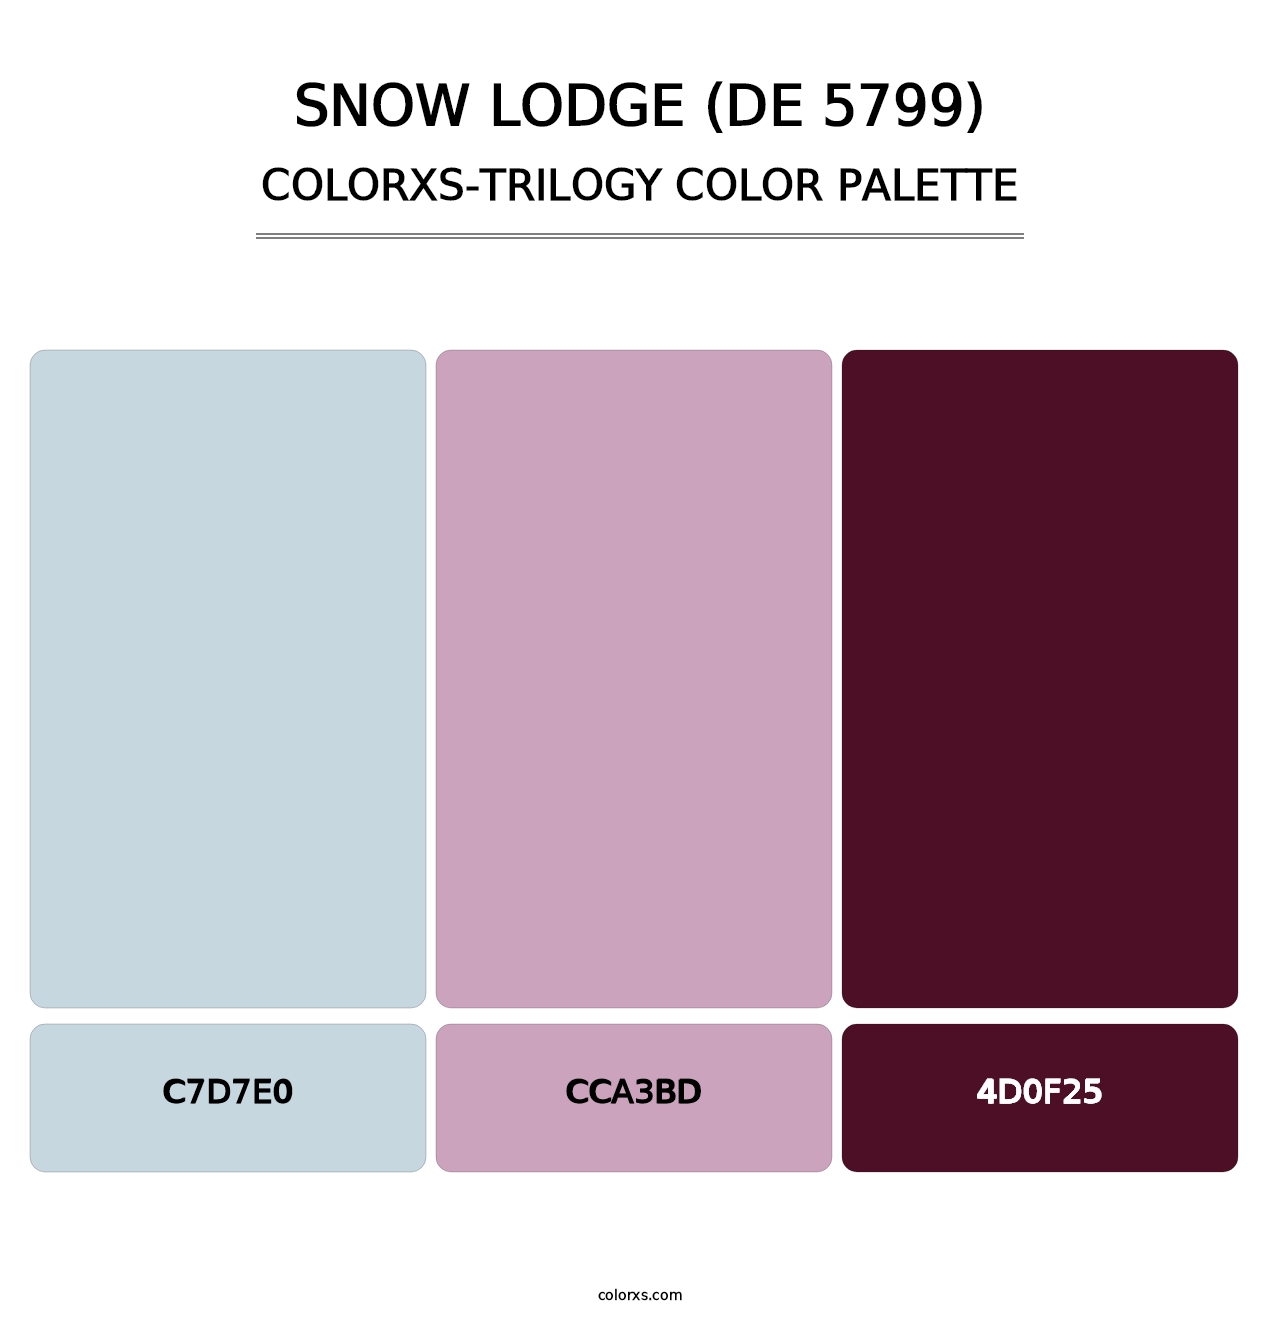 Snow Lodge (DE 5799) - Colorxs Trilogy Palette